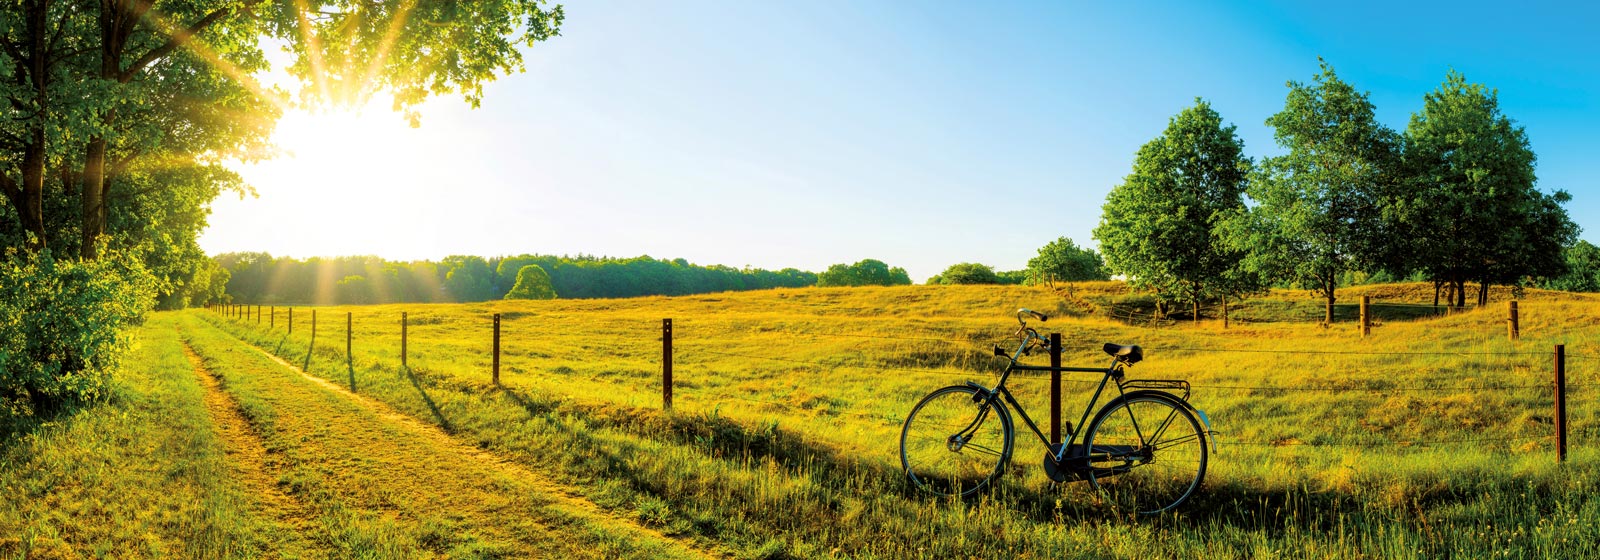 Feld umgeben von Wald, Strahlende Sonne und ein Fahrrad am Zaun